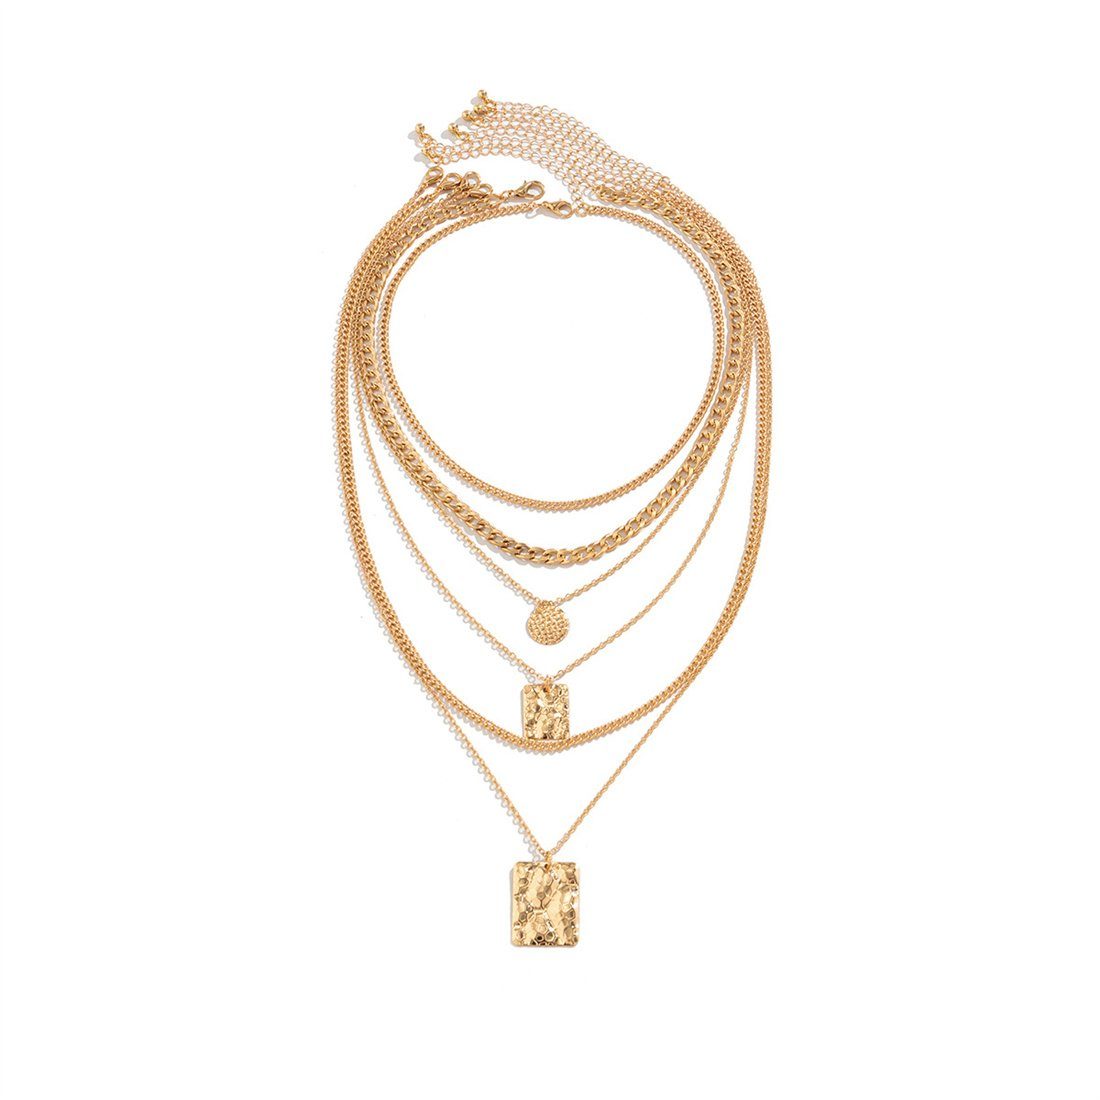 Anhänger DÖRÖY Gold Damenmode Choker-Set Set,mehrschichtige geometrische Halskette Halskette